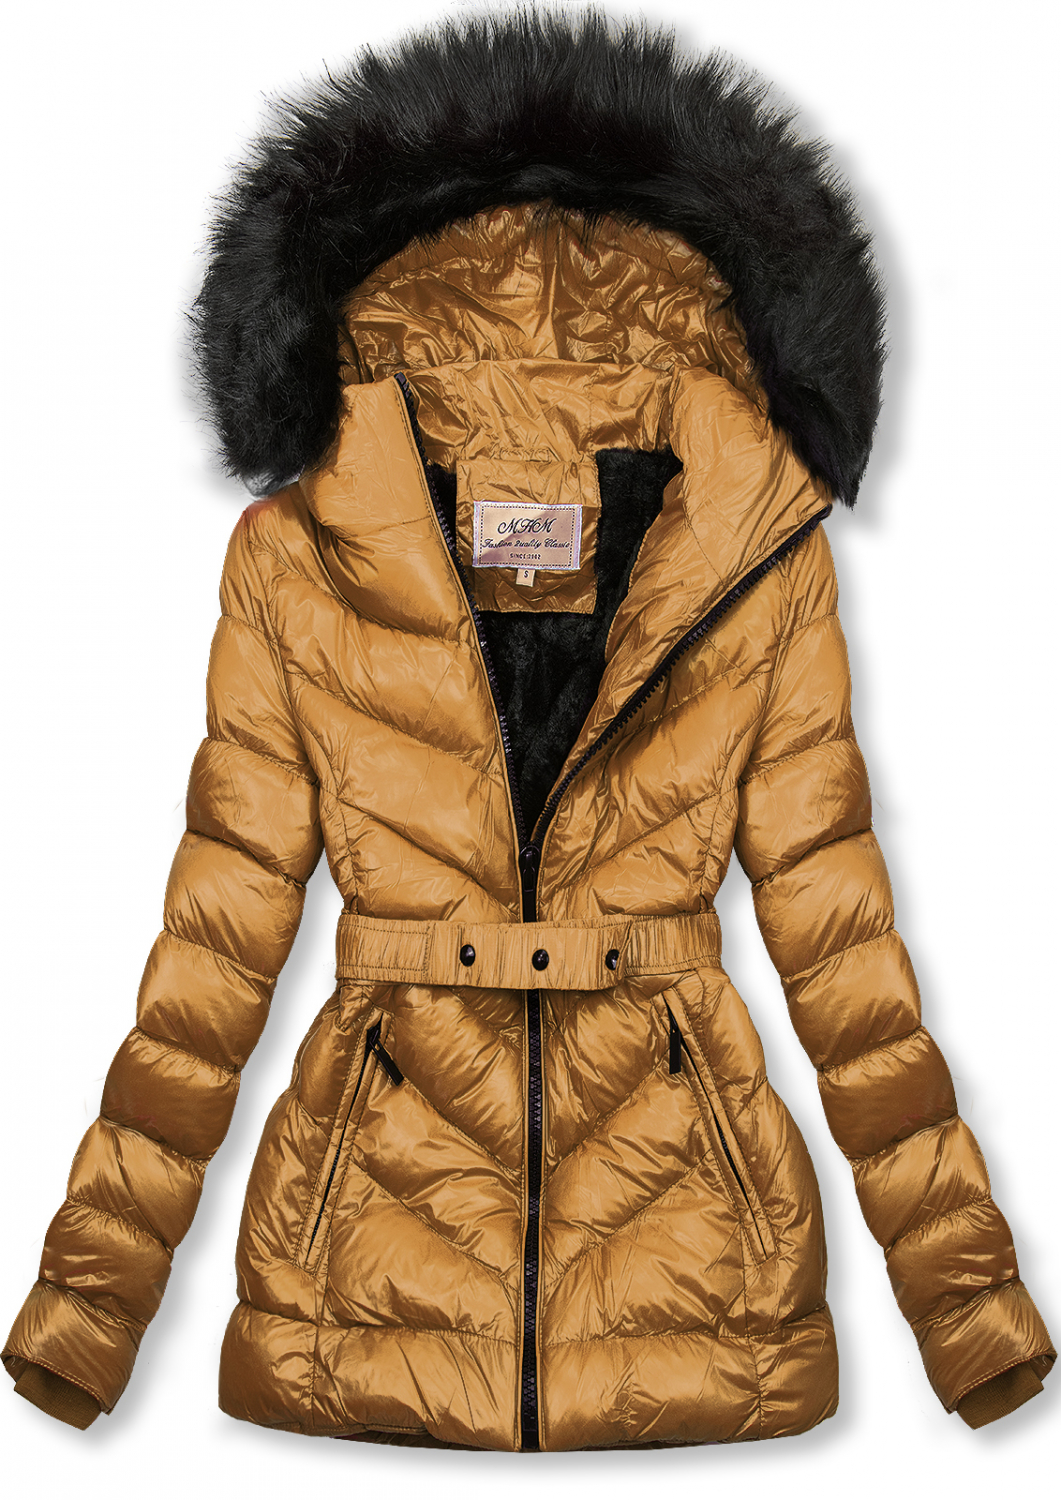 Karamelová zimná krátka bunda s čiernou kožušinou.
- neodopínateľná kapucňa
- odnímateľná kožušina
- zapínanie na zips
- v prednej časti 2 vrecká 
- vnútro zateplené plyšom
- s opaskom
- materiál: 100% polyester, podšívka: 100% polyester